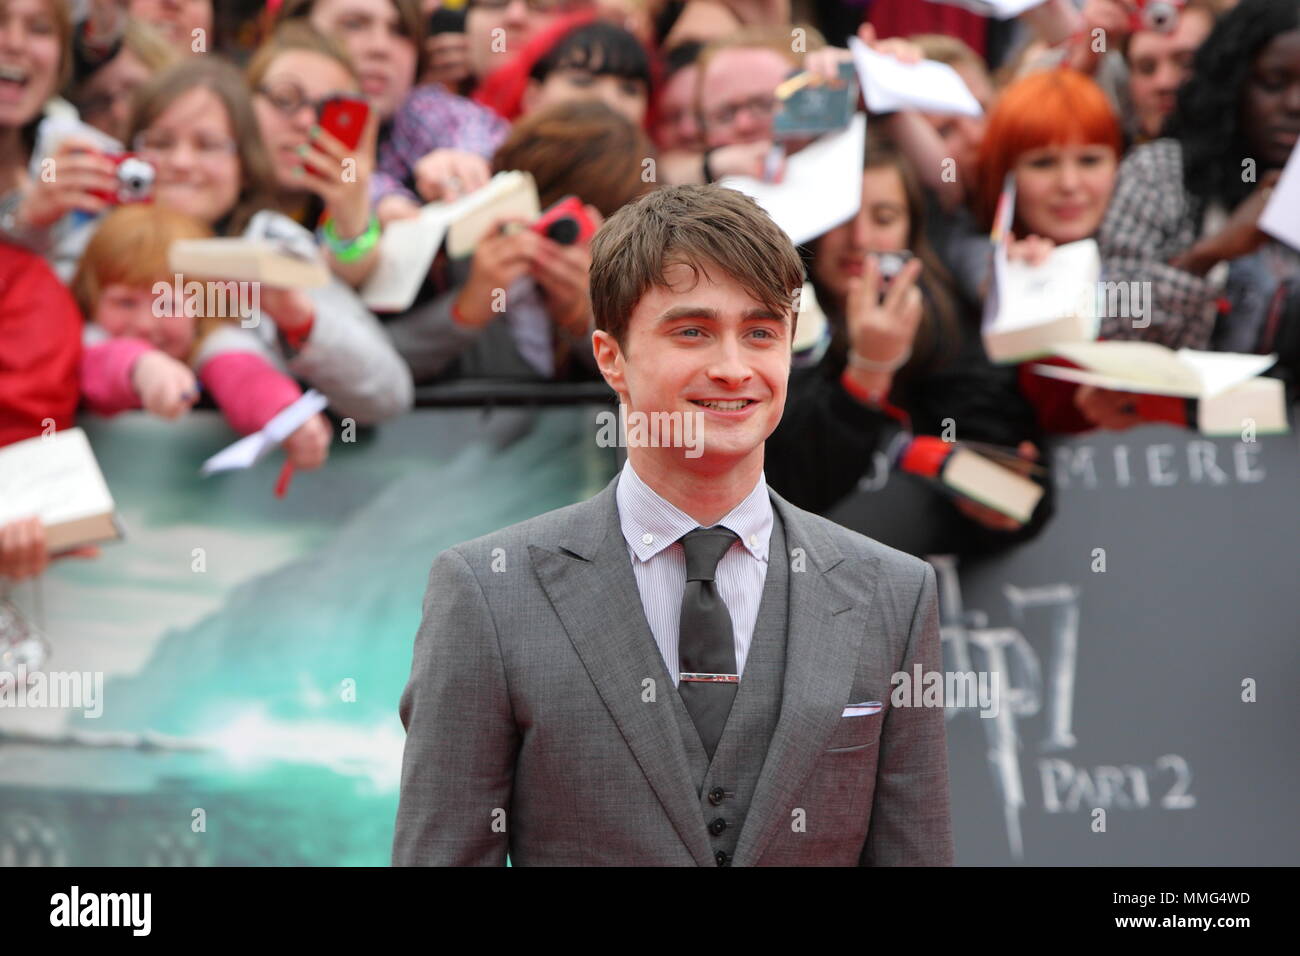 Regno Unito - Animazione - Daniel Radcliffe presso la UK Premiere del film di Harry Potter ed il Deathly Hallows - parte 2, Trafalgar Square a Londra il 7 Luglio 2011 Foto Stock